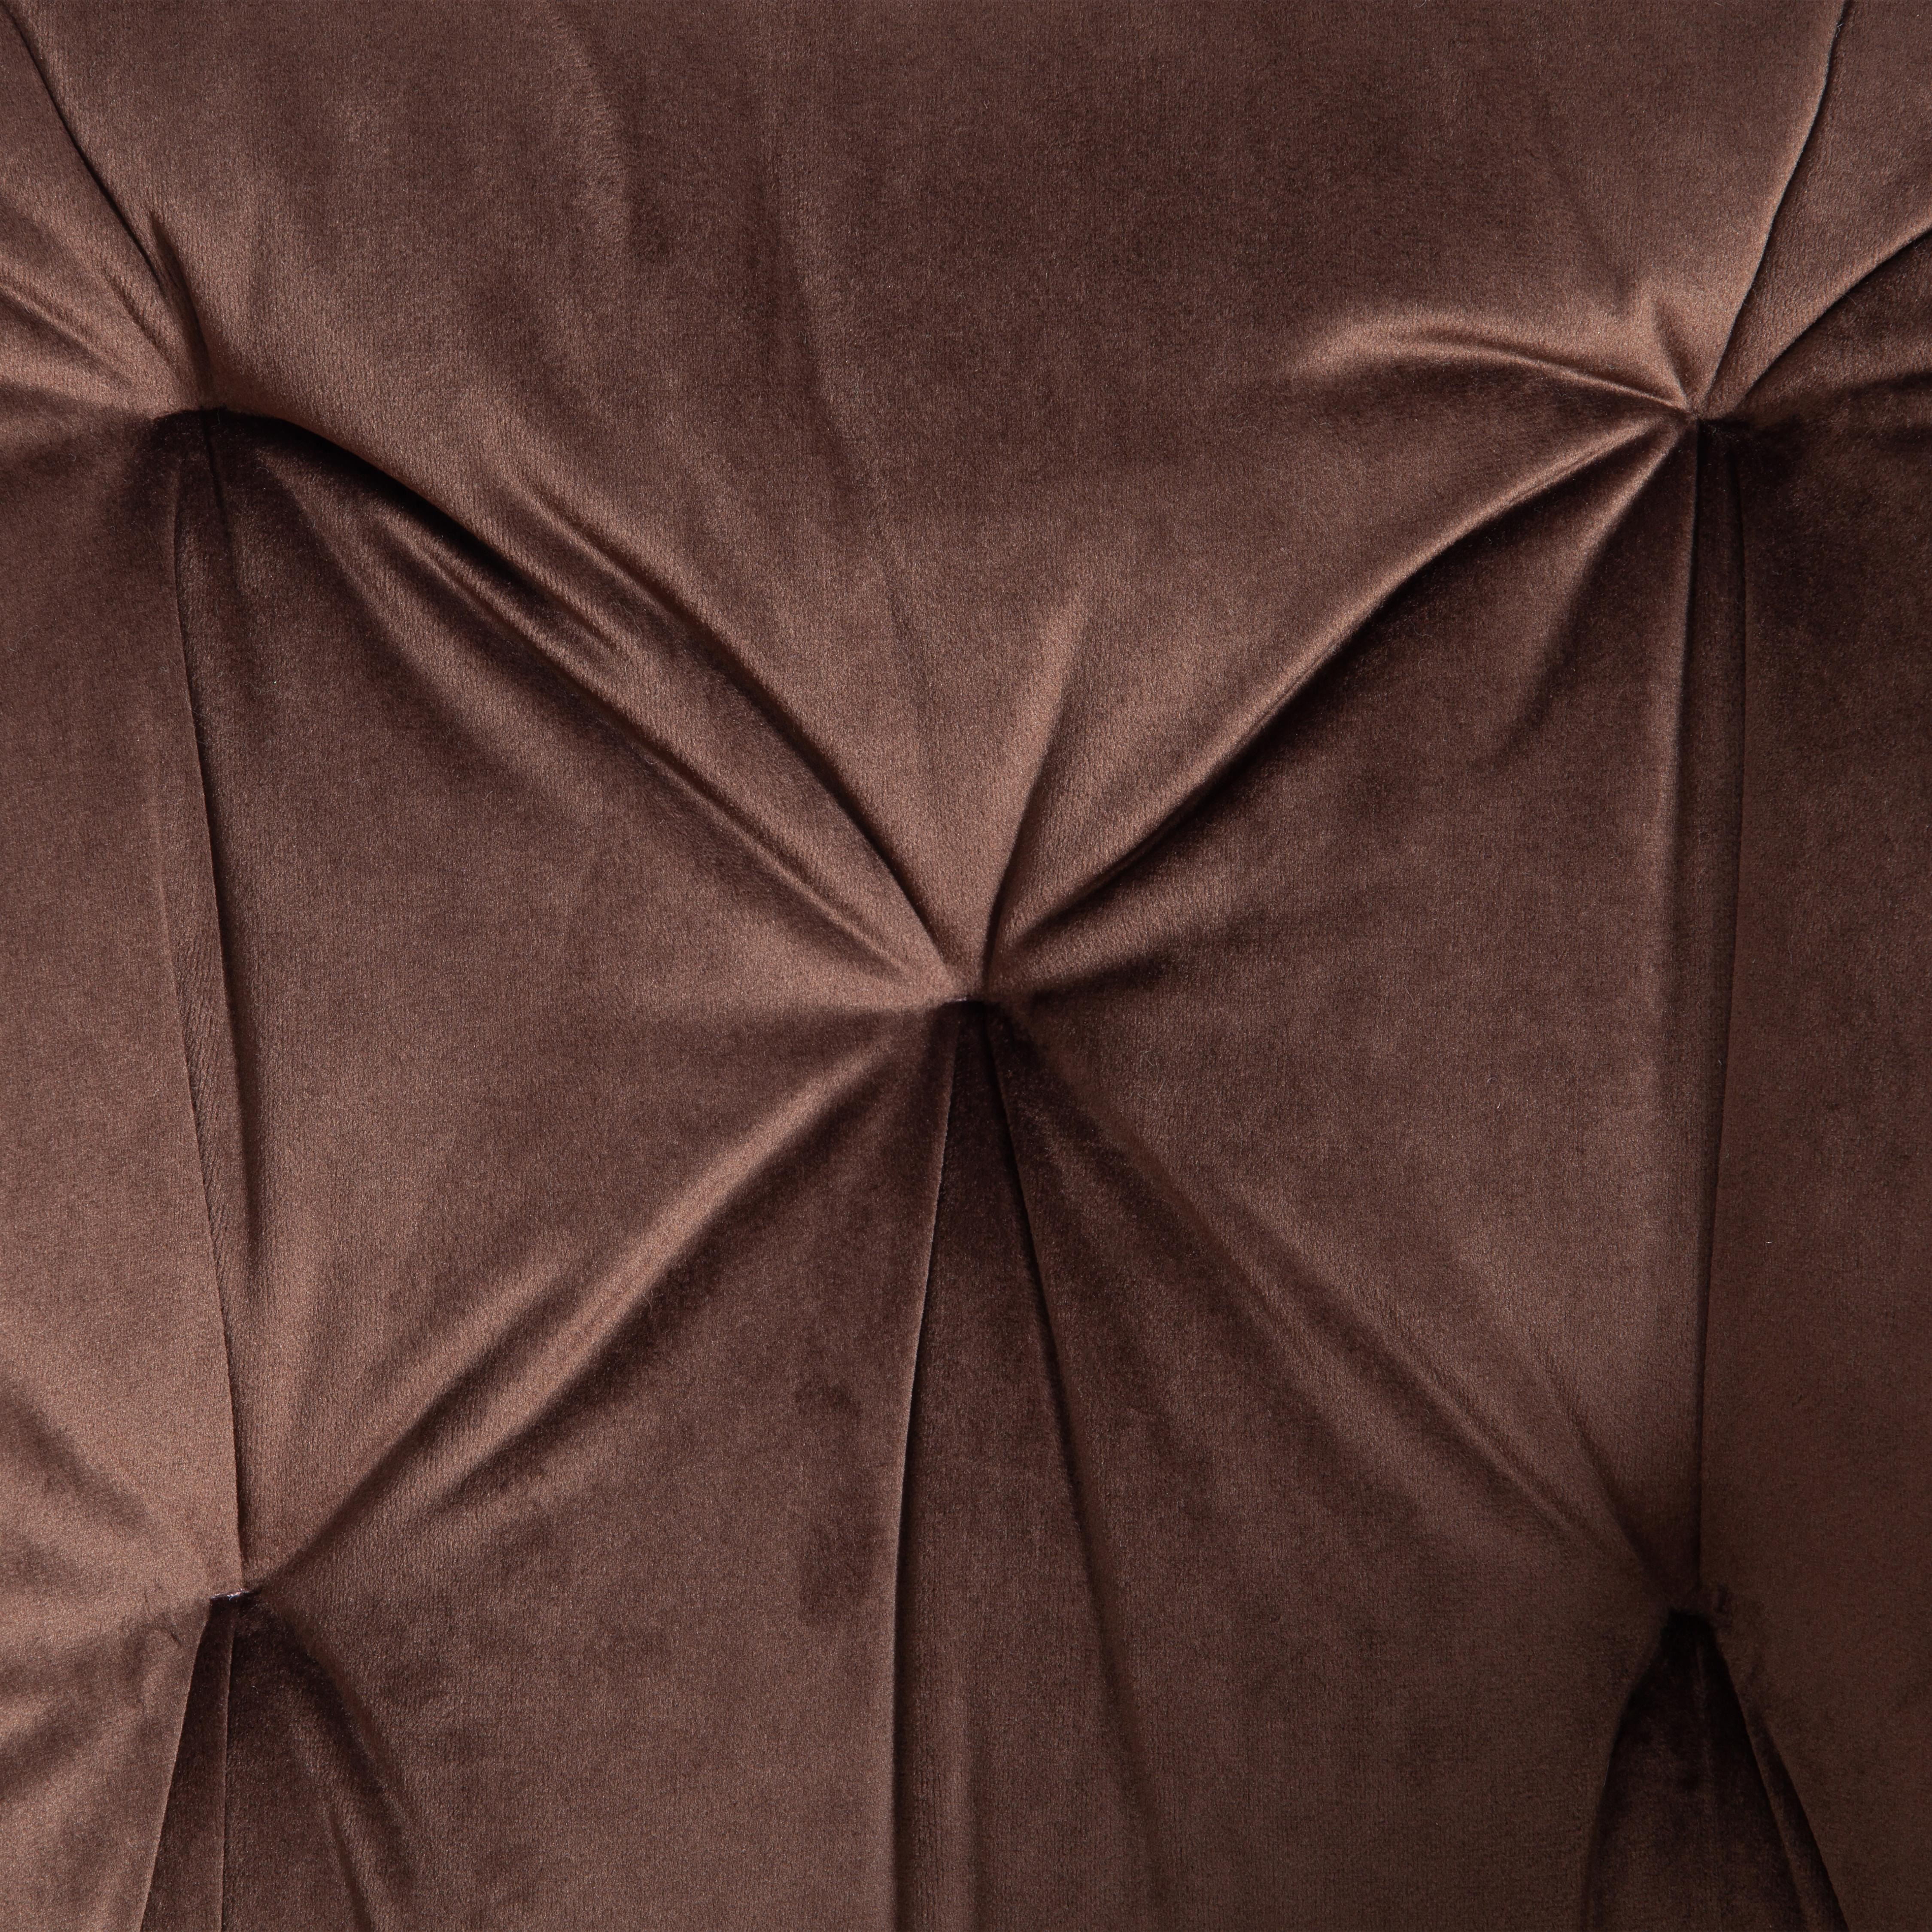 Кресло LIVORNO ( mod.1602 ) металл/ткань, 67х57х82см, коричневый вельвет